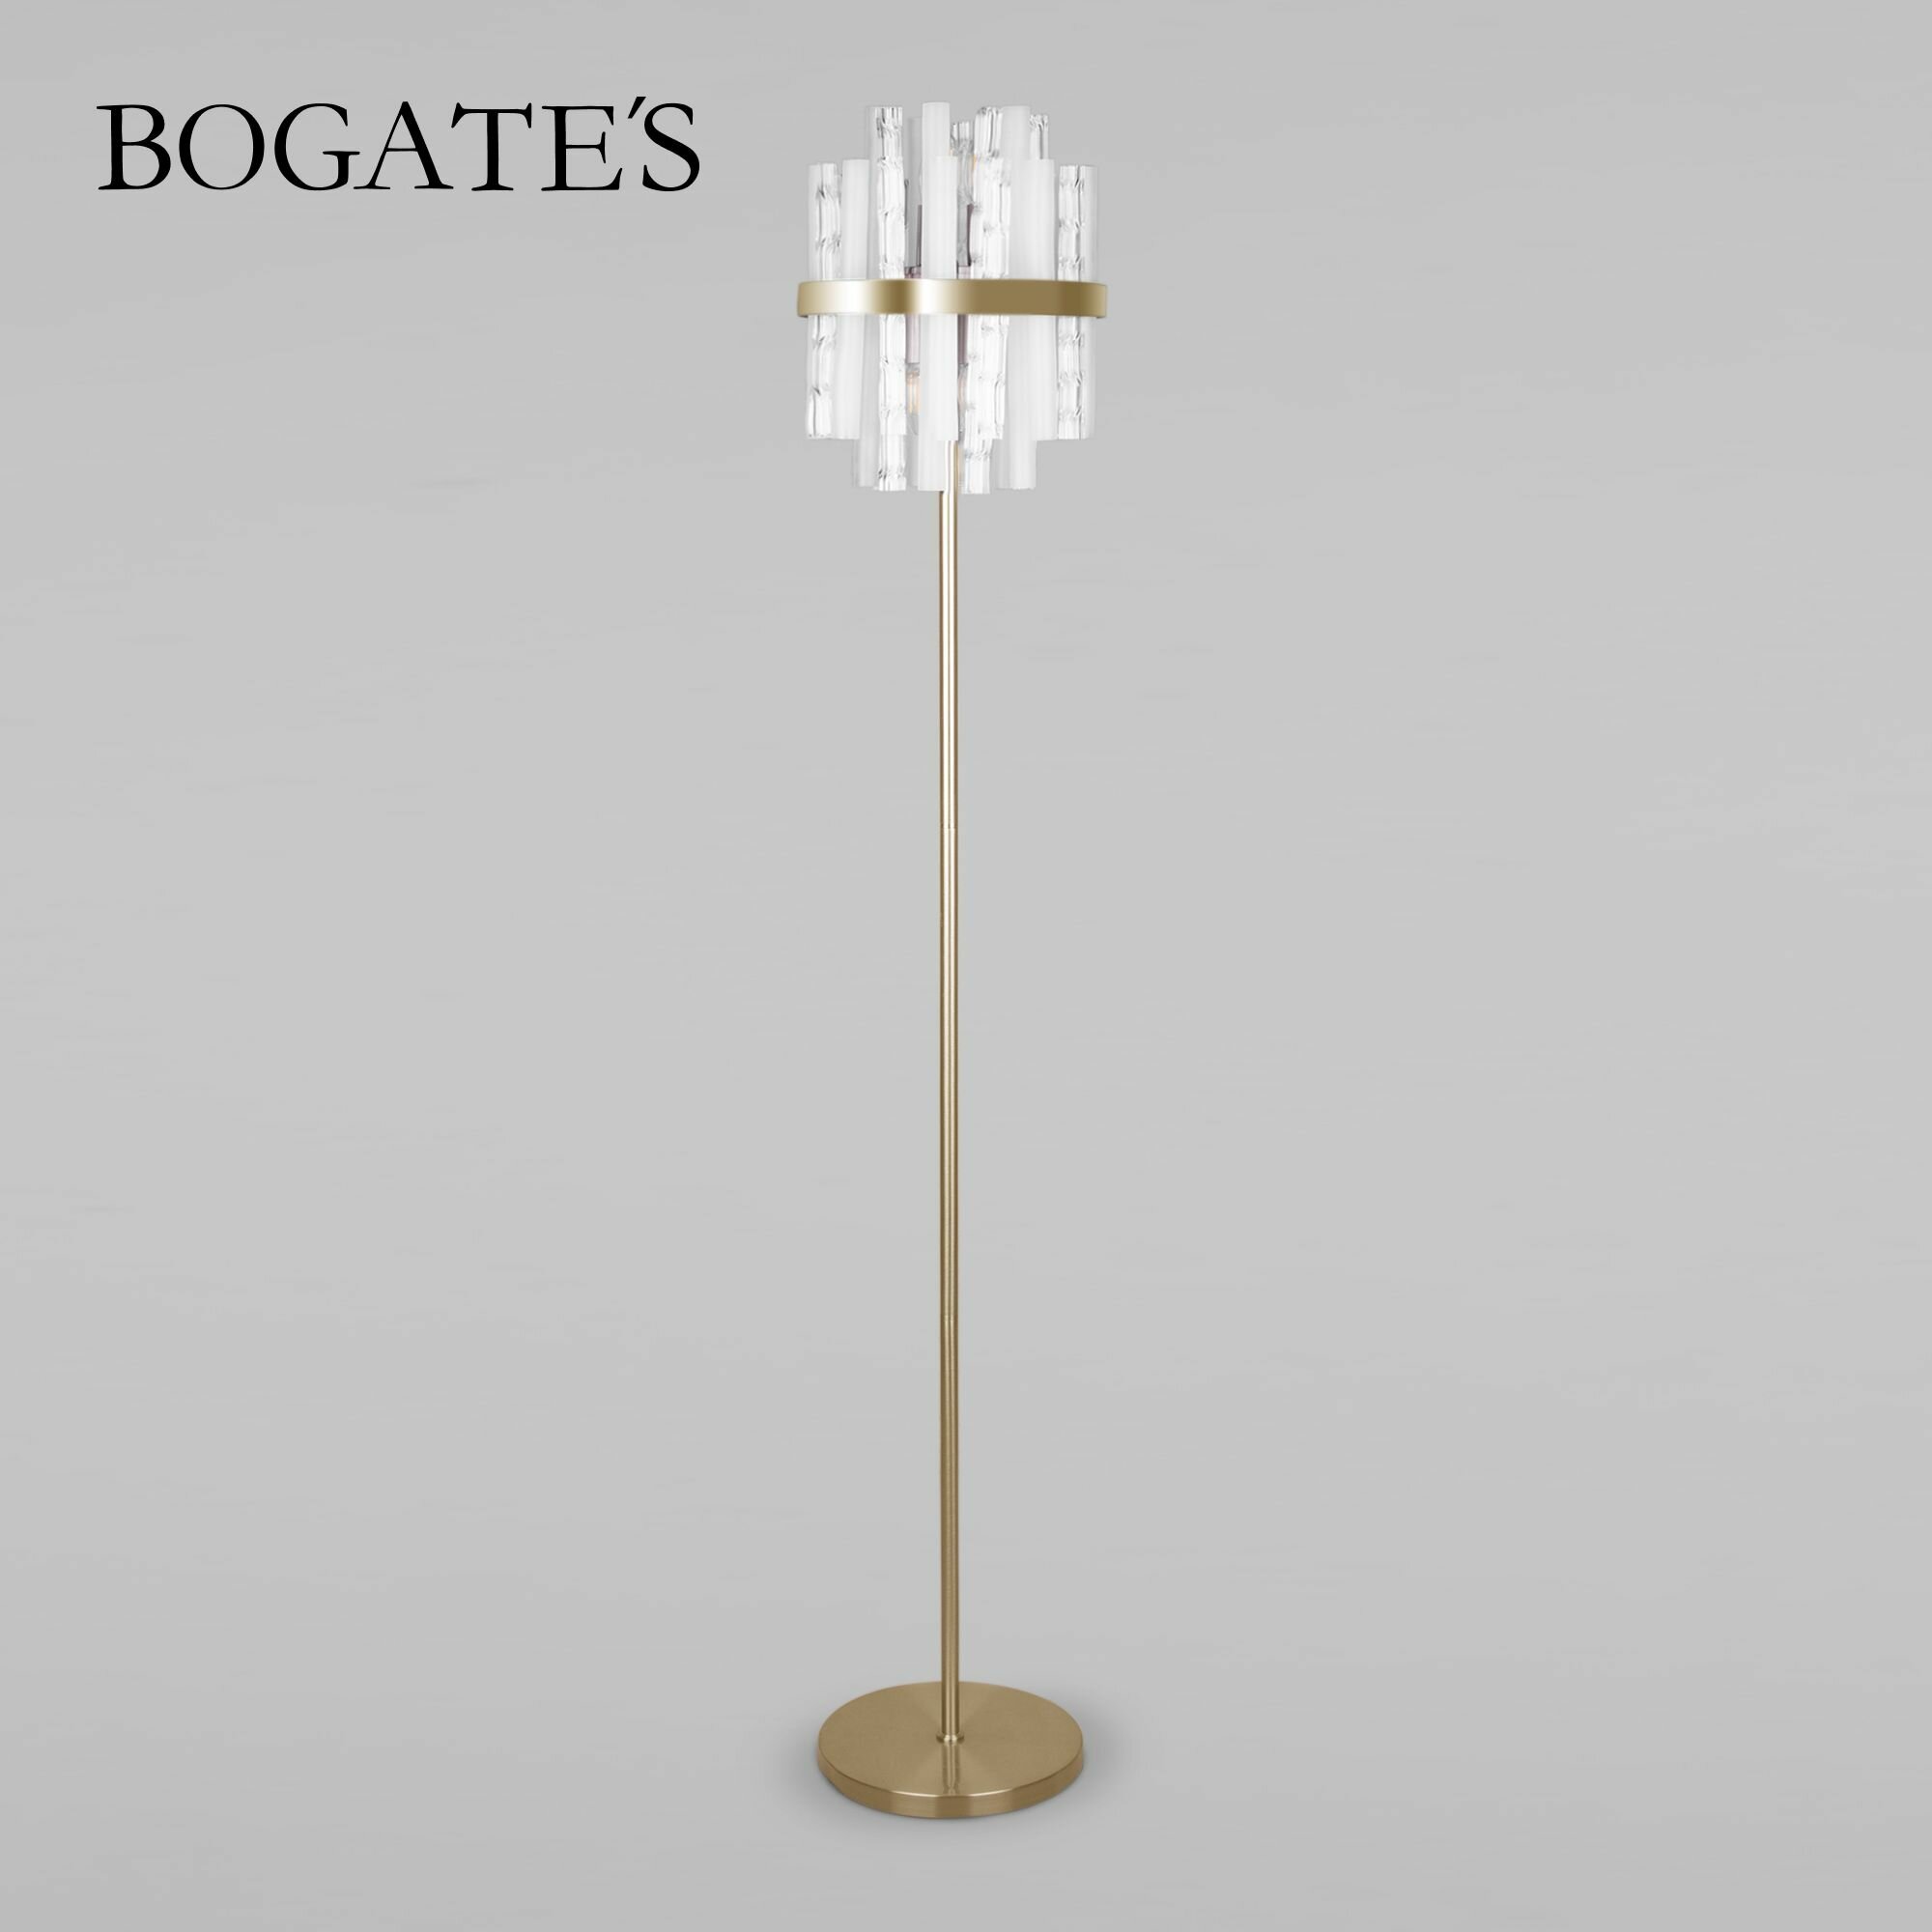 Торшер / Напольный светильник Bogate's Hollis 01111/4, цвет латунь